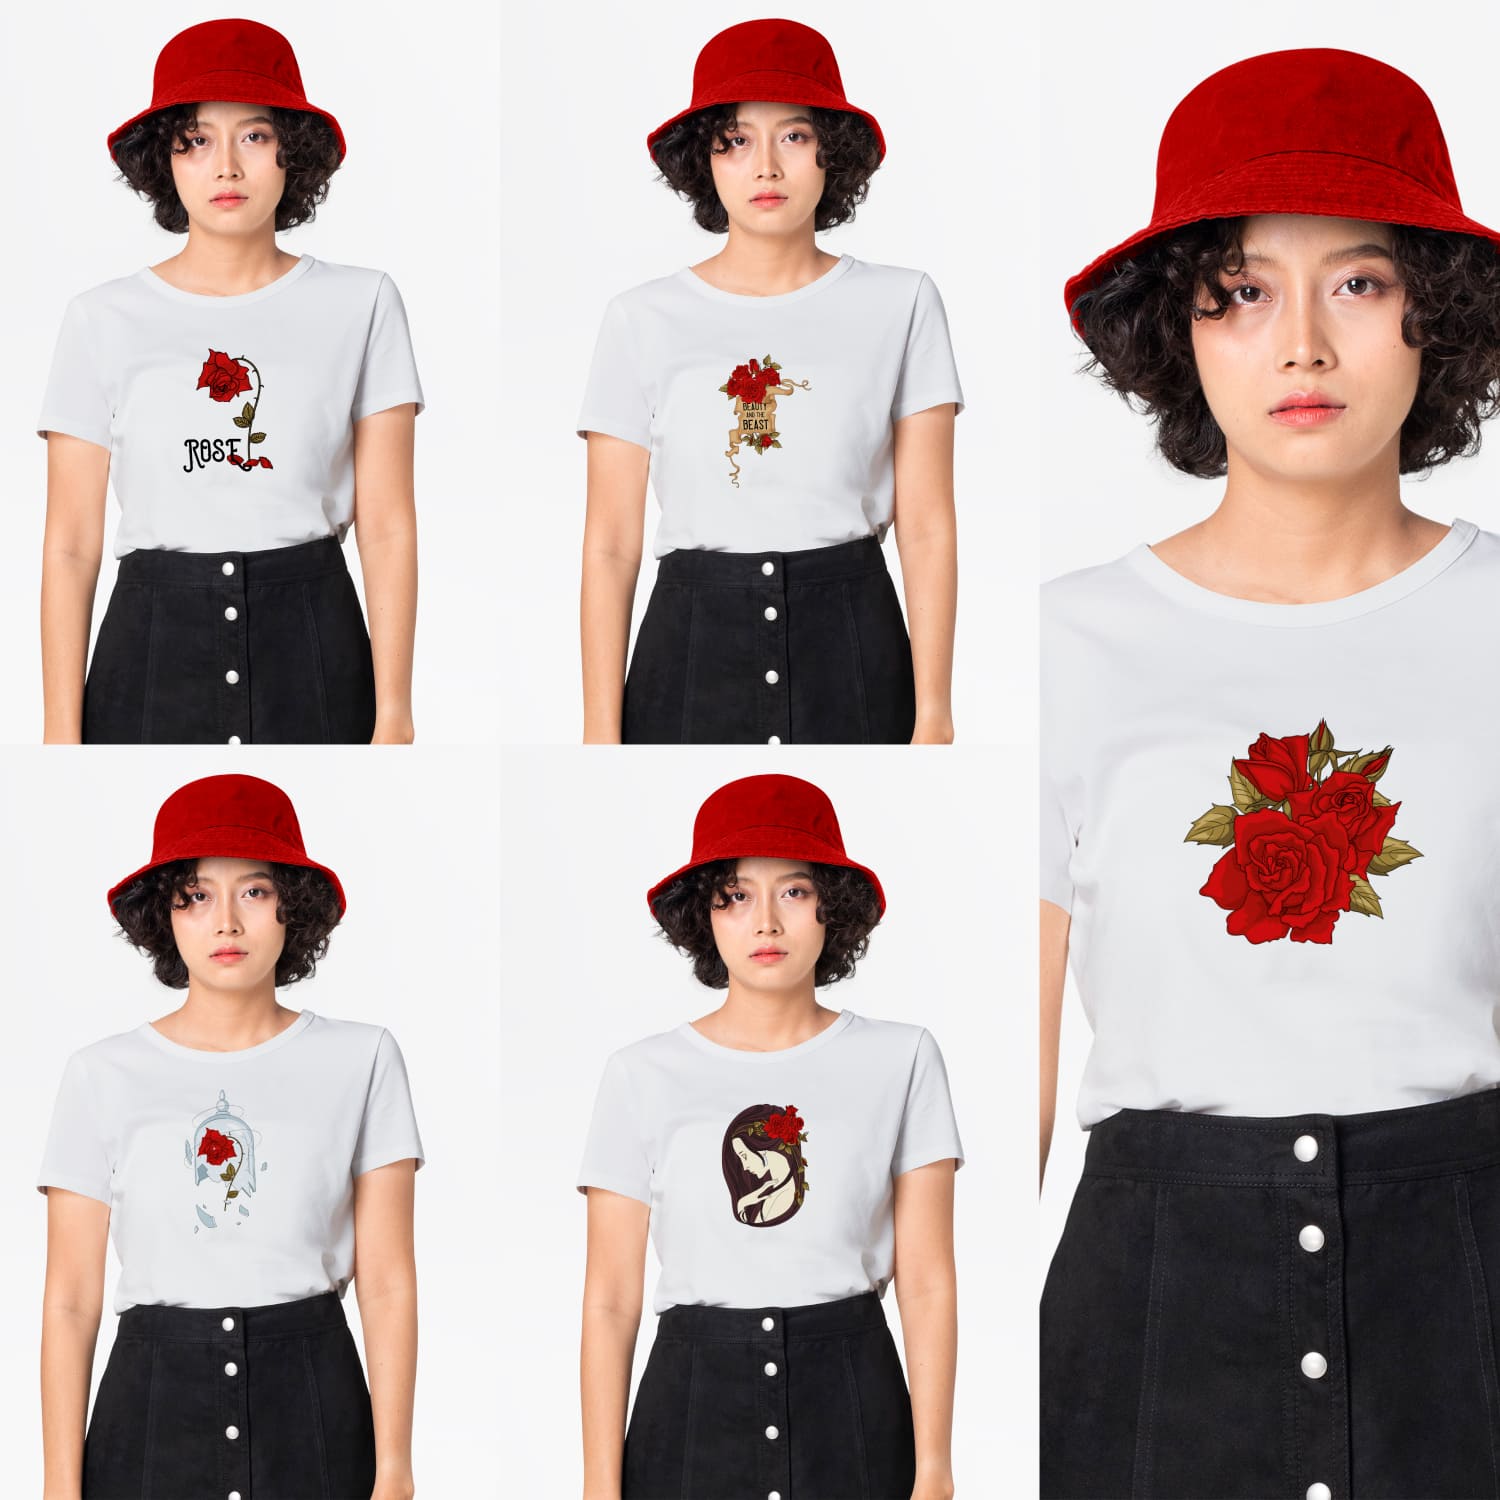 Belle Rose Svg T-shirt Designs cover.